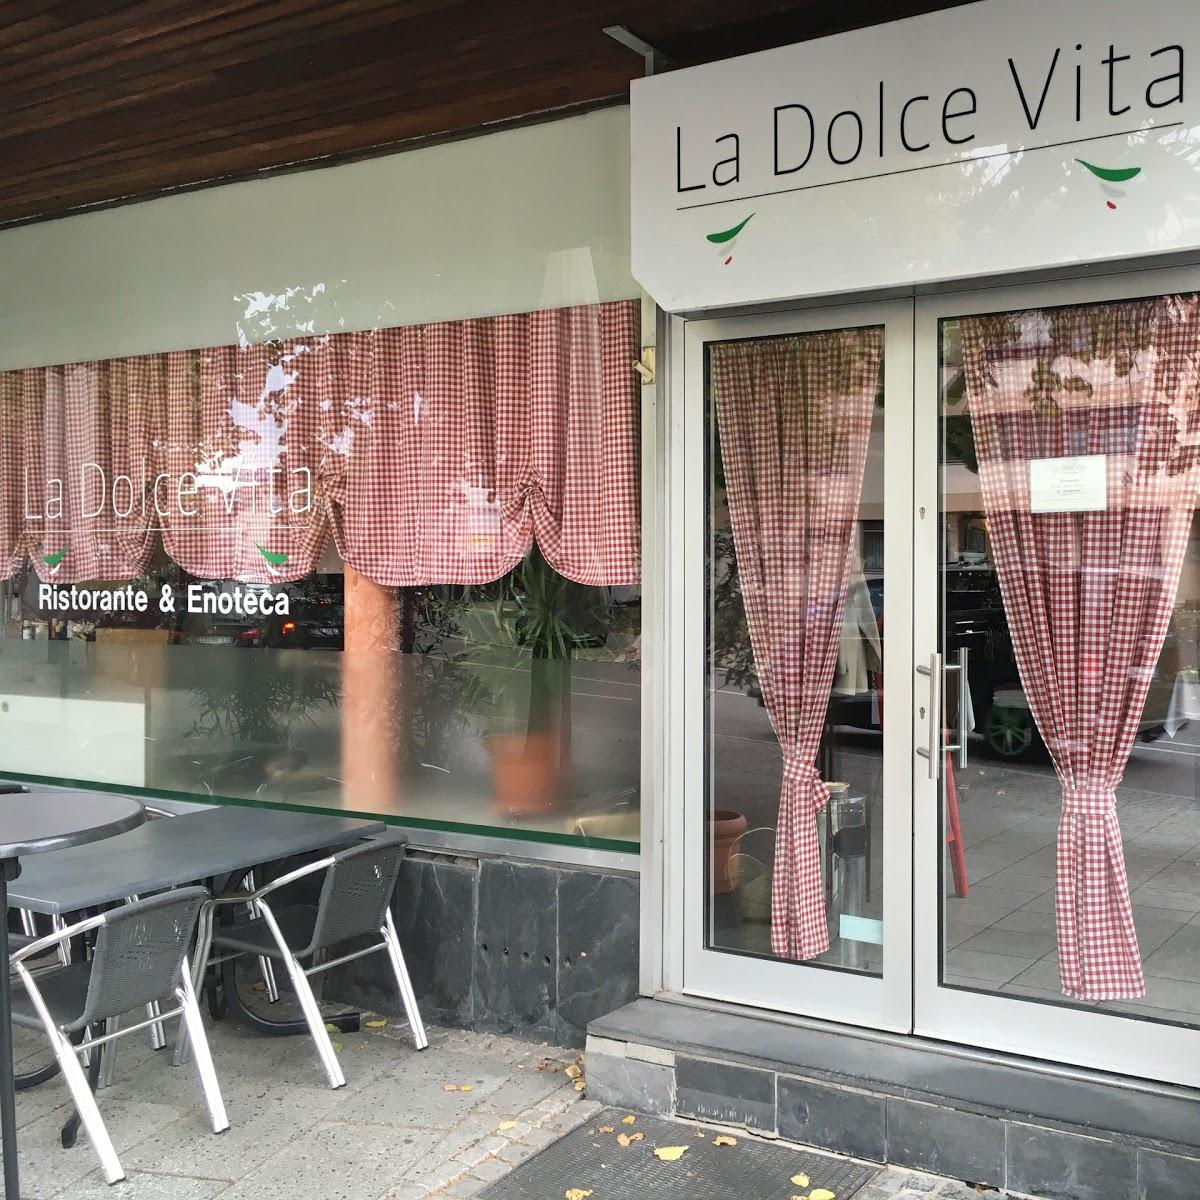 Restaurant "La Dolce Vita" in  (Neckar)